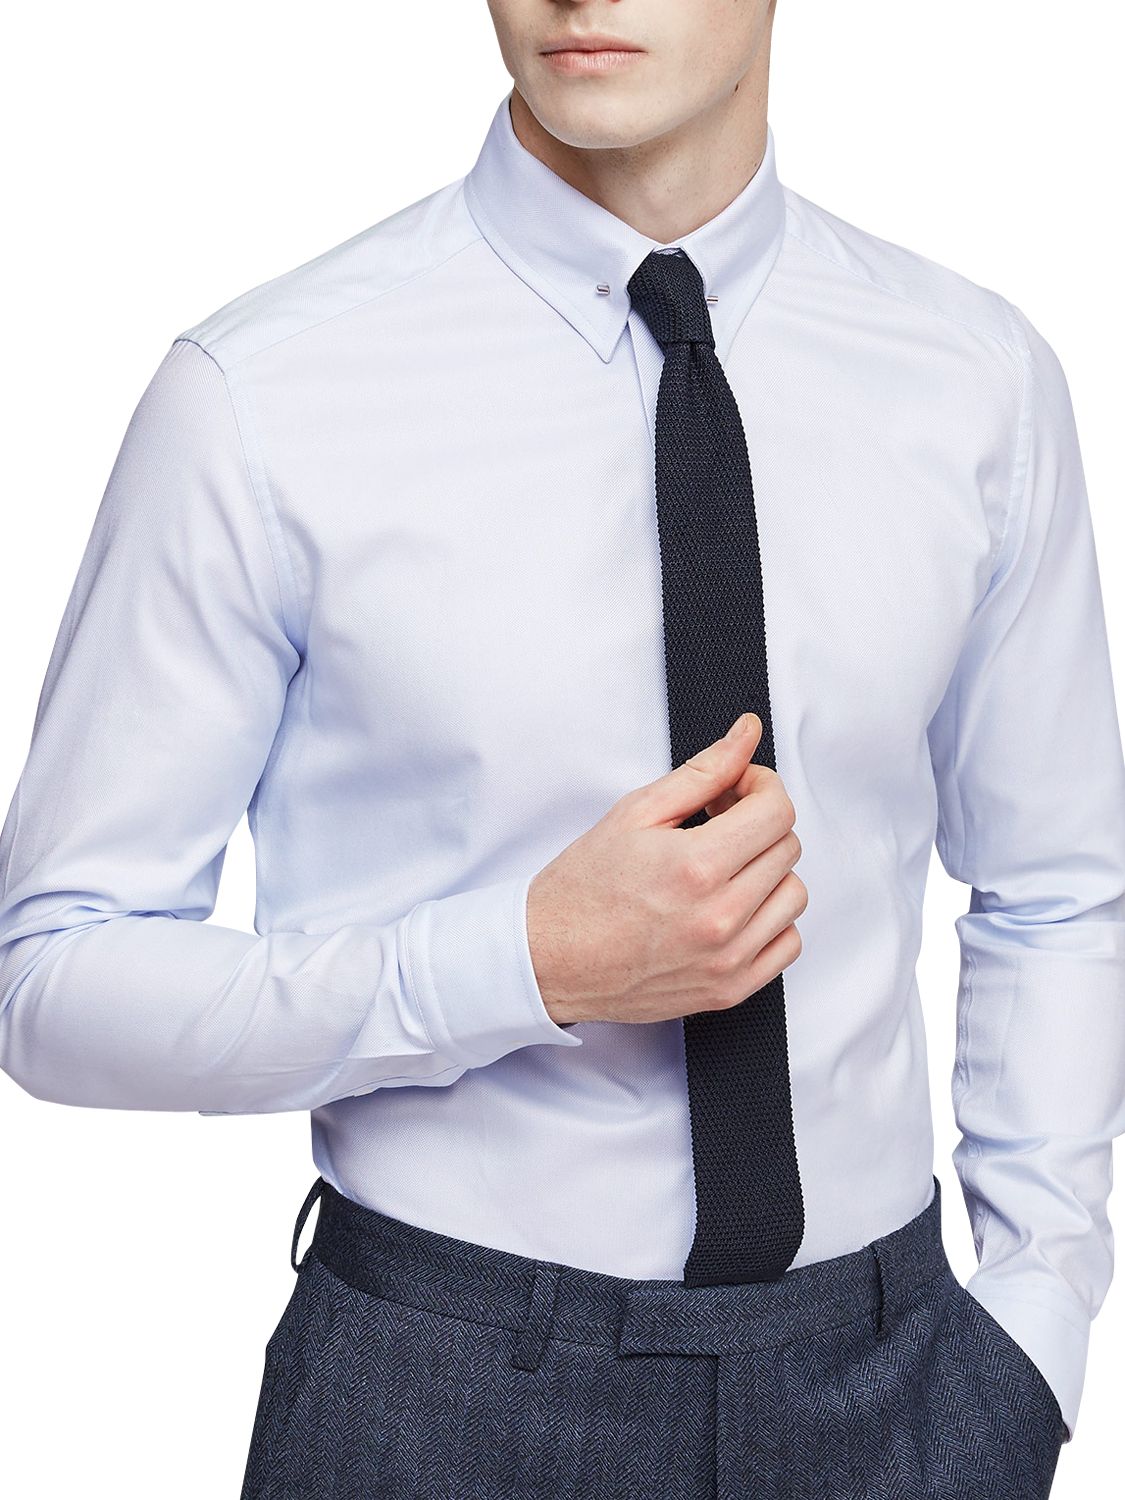 Reiss Ludlow Collar Bar Slim Fit Shirt, Soft Blue